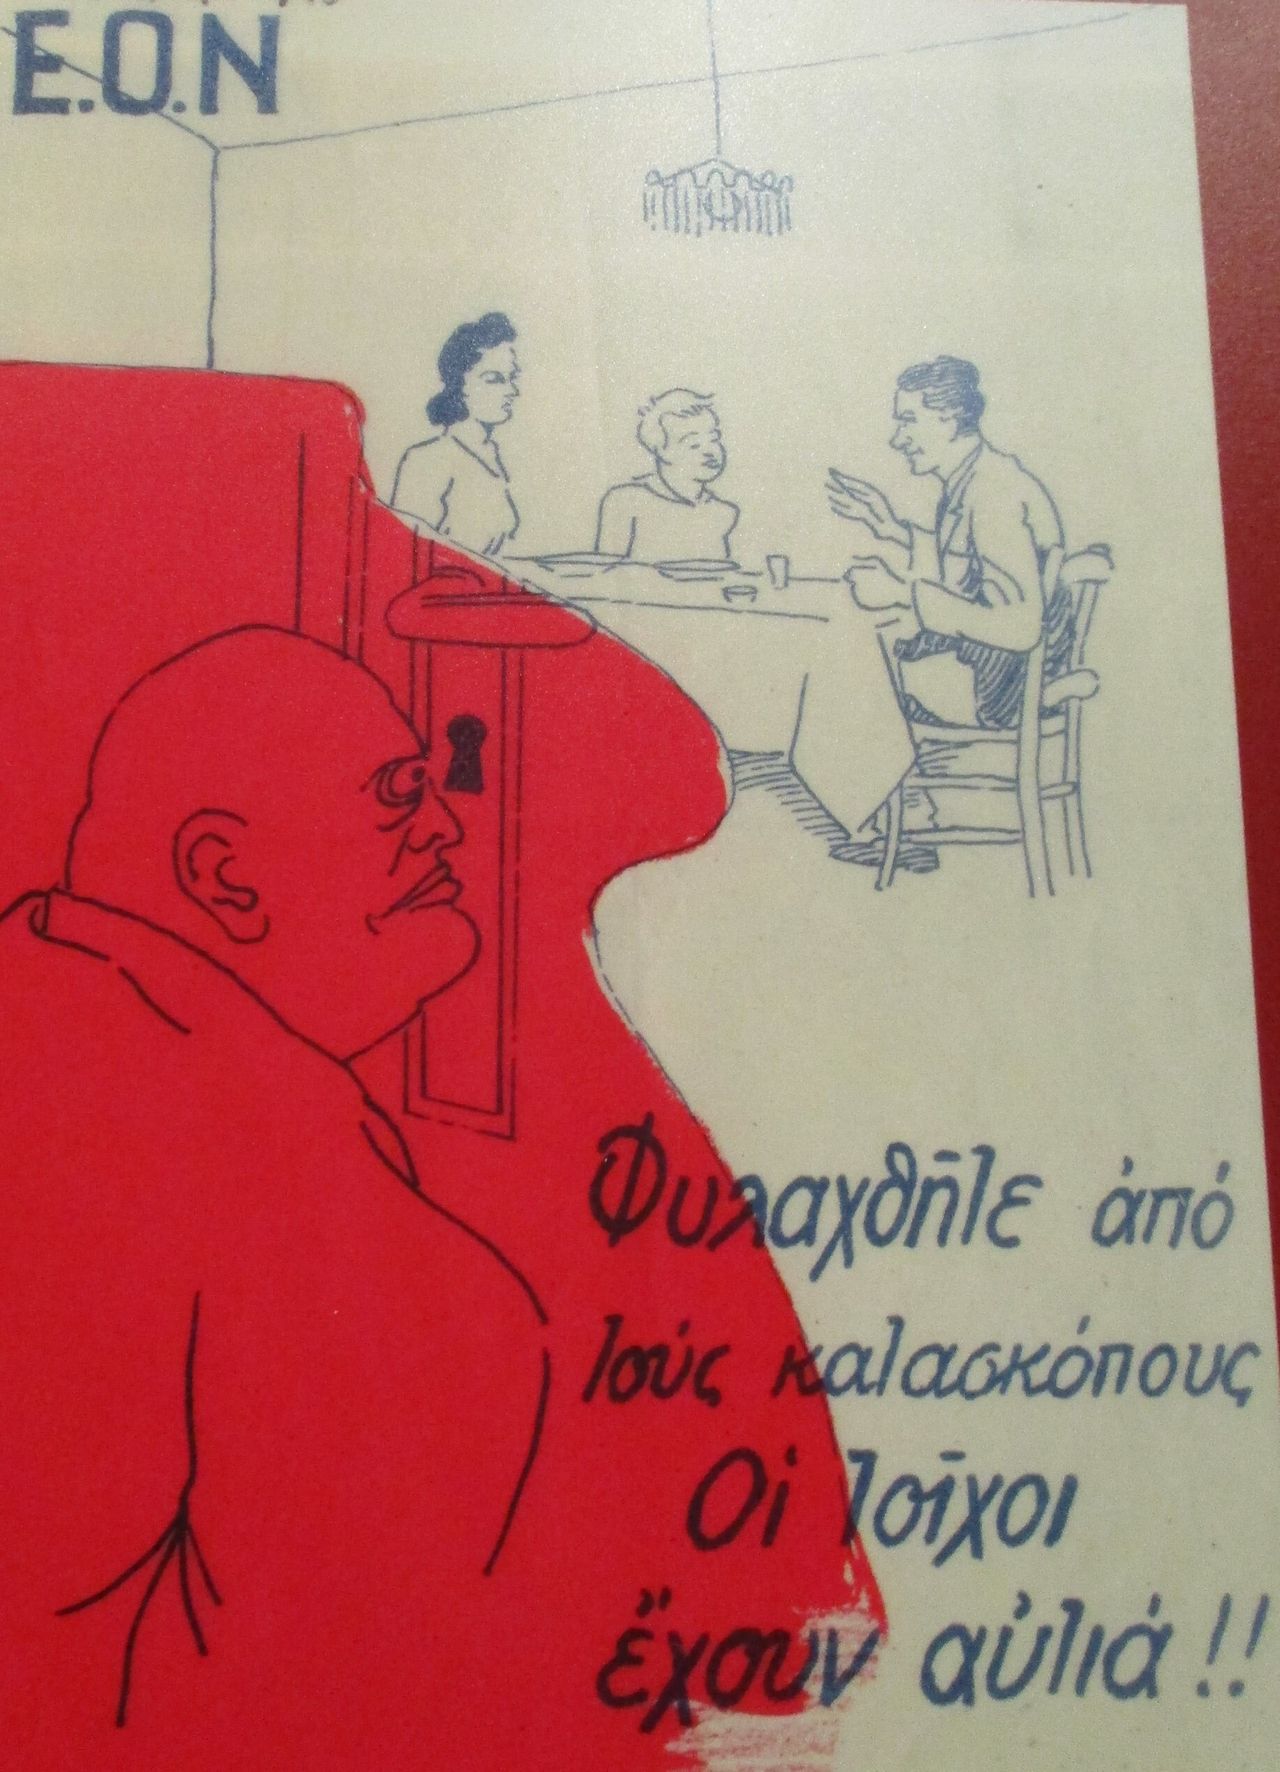 Αφίσα της Εθνικής Οργάνωσης Νεολαίας (ΕΟΝ) που κυκλοφόρησε το 1940 και παρουσίαζε τον Μουσολίνι να κρυφακούει όσα λέγονται σε ένα οικογενειακό γεύμα. Μεταξύ των μέτρων προστασίας, ήταν και η ευαισθητοποίηση σε θέματα κατασκοπείας.